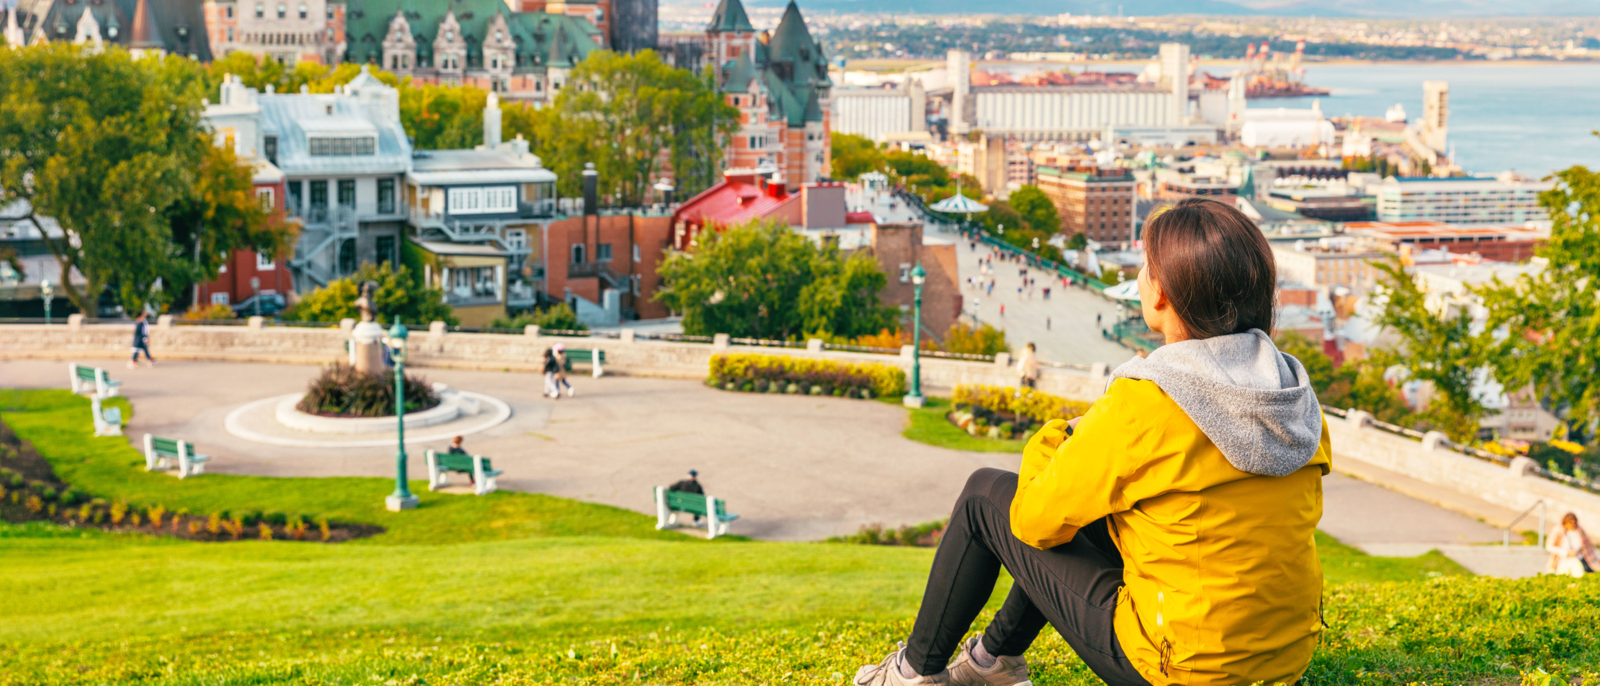 Le Canada voyage à Québec, un touriste qui jouit d'une vue sur le château de Château Frontenac et le fleuve Saint-Laurent en arrière-plan